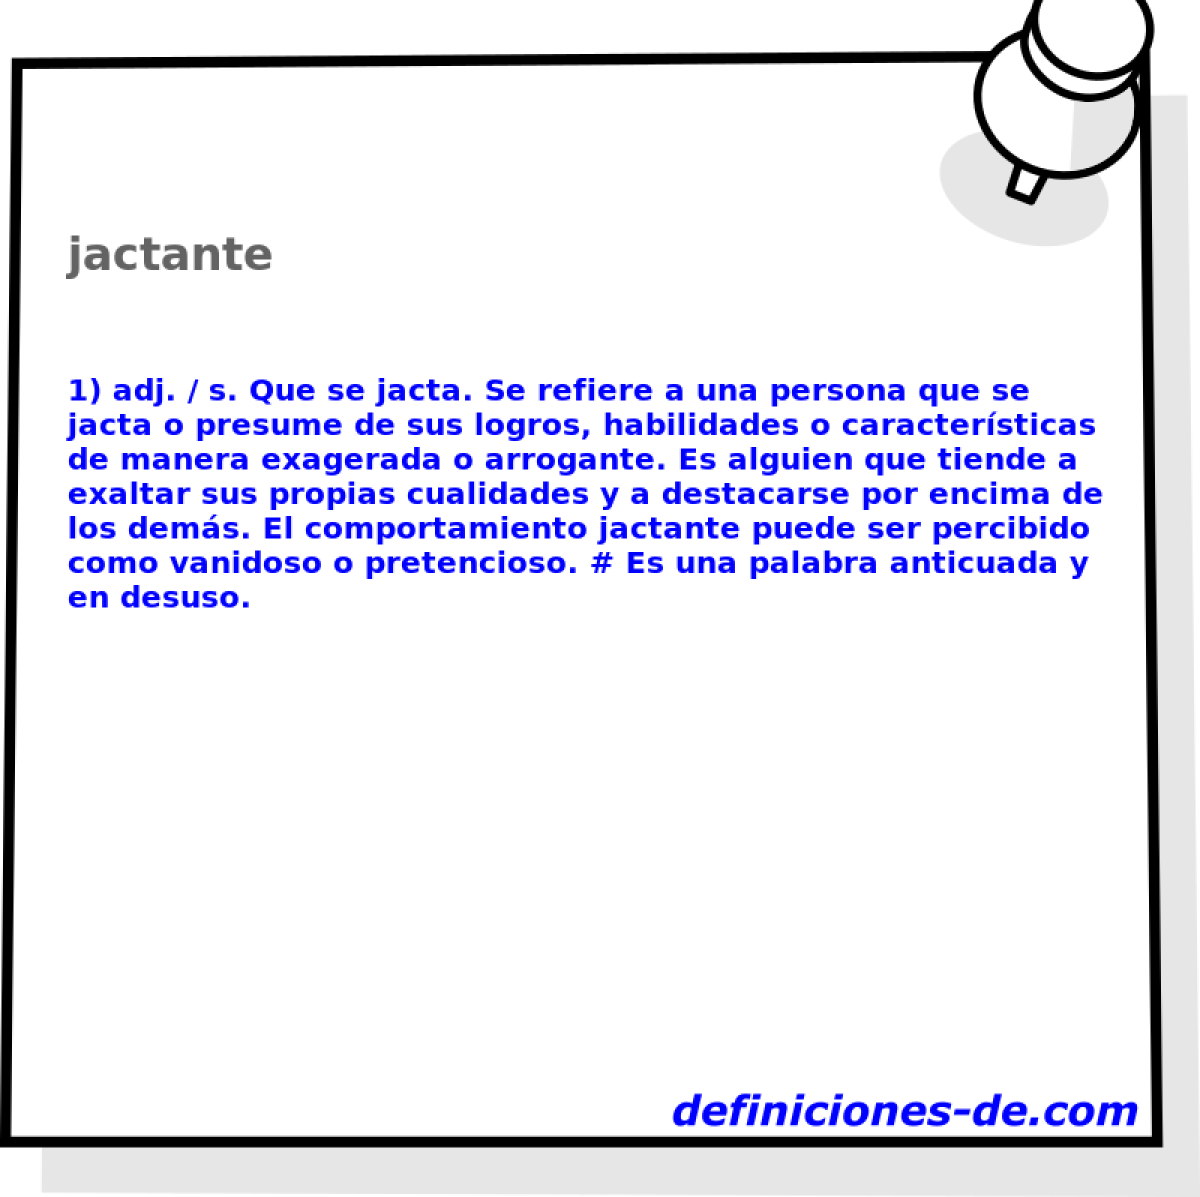 jactante 